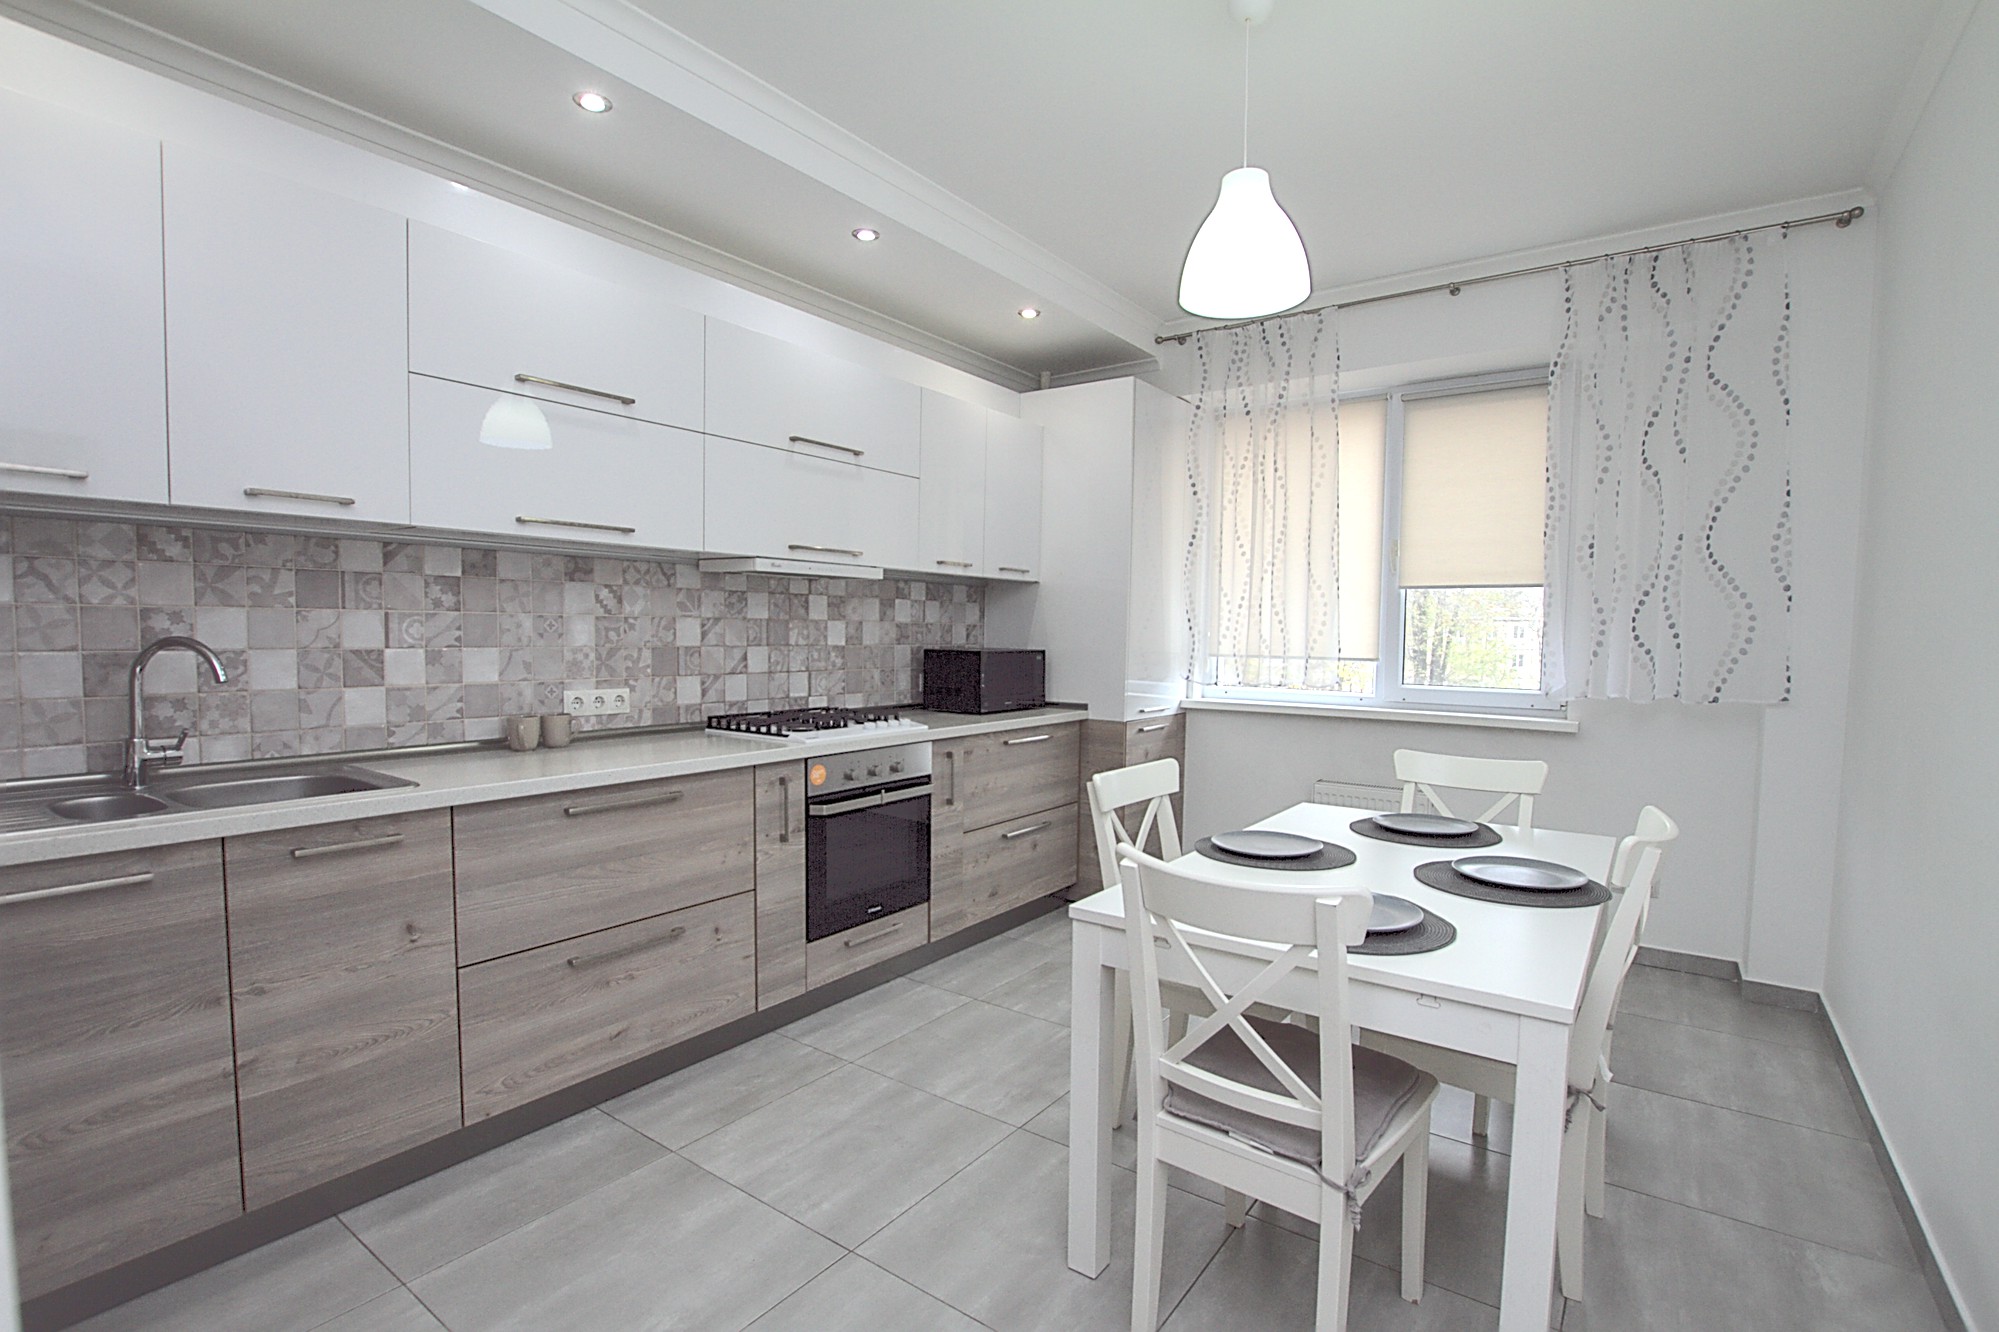 Apartment for rent in Chisinau, Botanica: 3 rooms, 1 bedroom, 80 m²